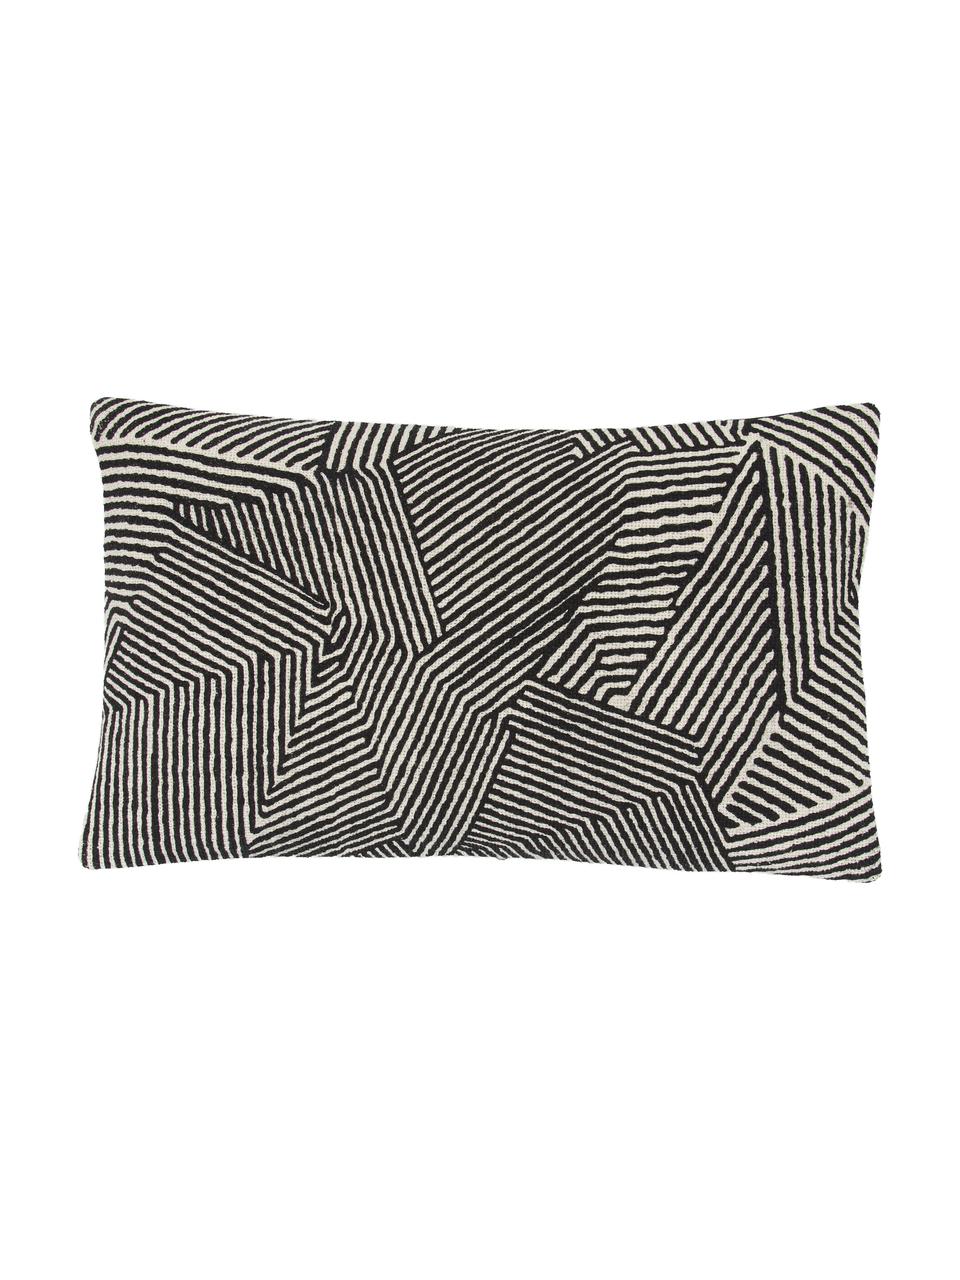 Kissenhülle Nadia mit grafischem Muster in Schwarz, 100%  Baumwolle, Beige, Weiß, Schwarz, B 30 x L 50 cm